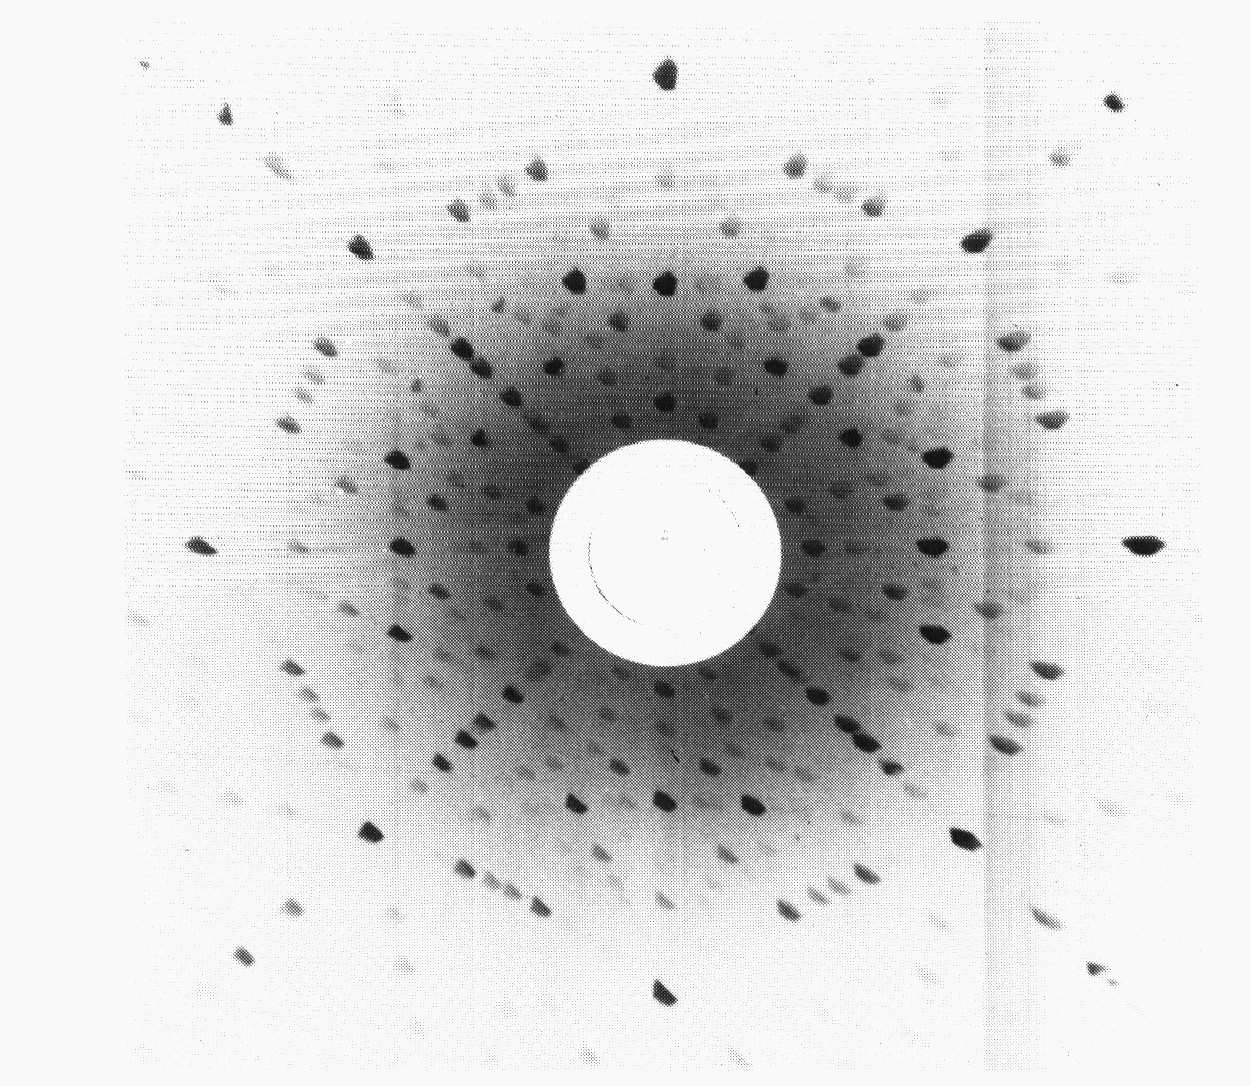 Física do Estado Sólido 9 Figura 6: Lauegrama de retorno de um cristal de espinela registado numa câmara plana.